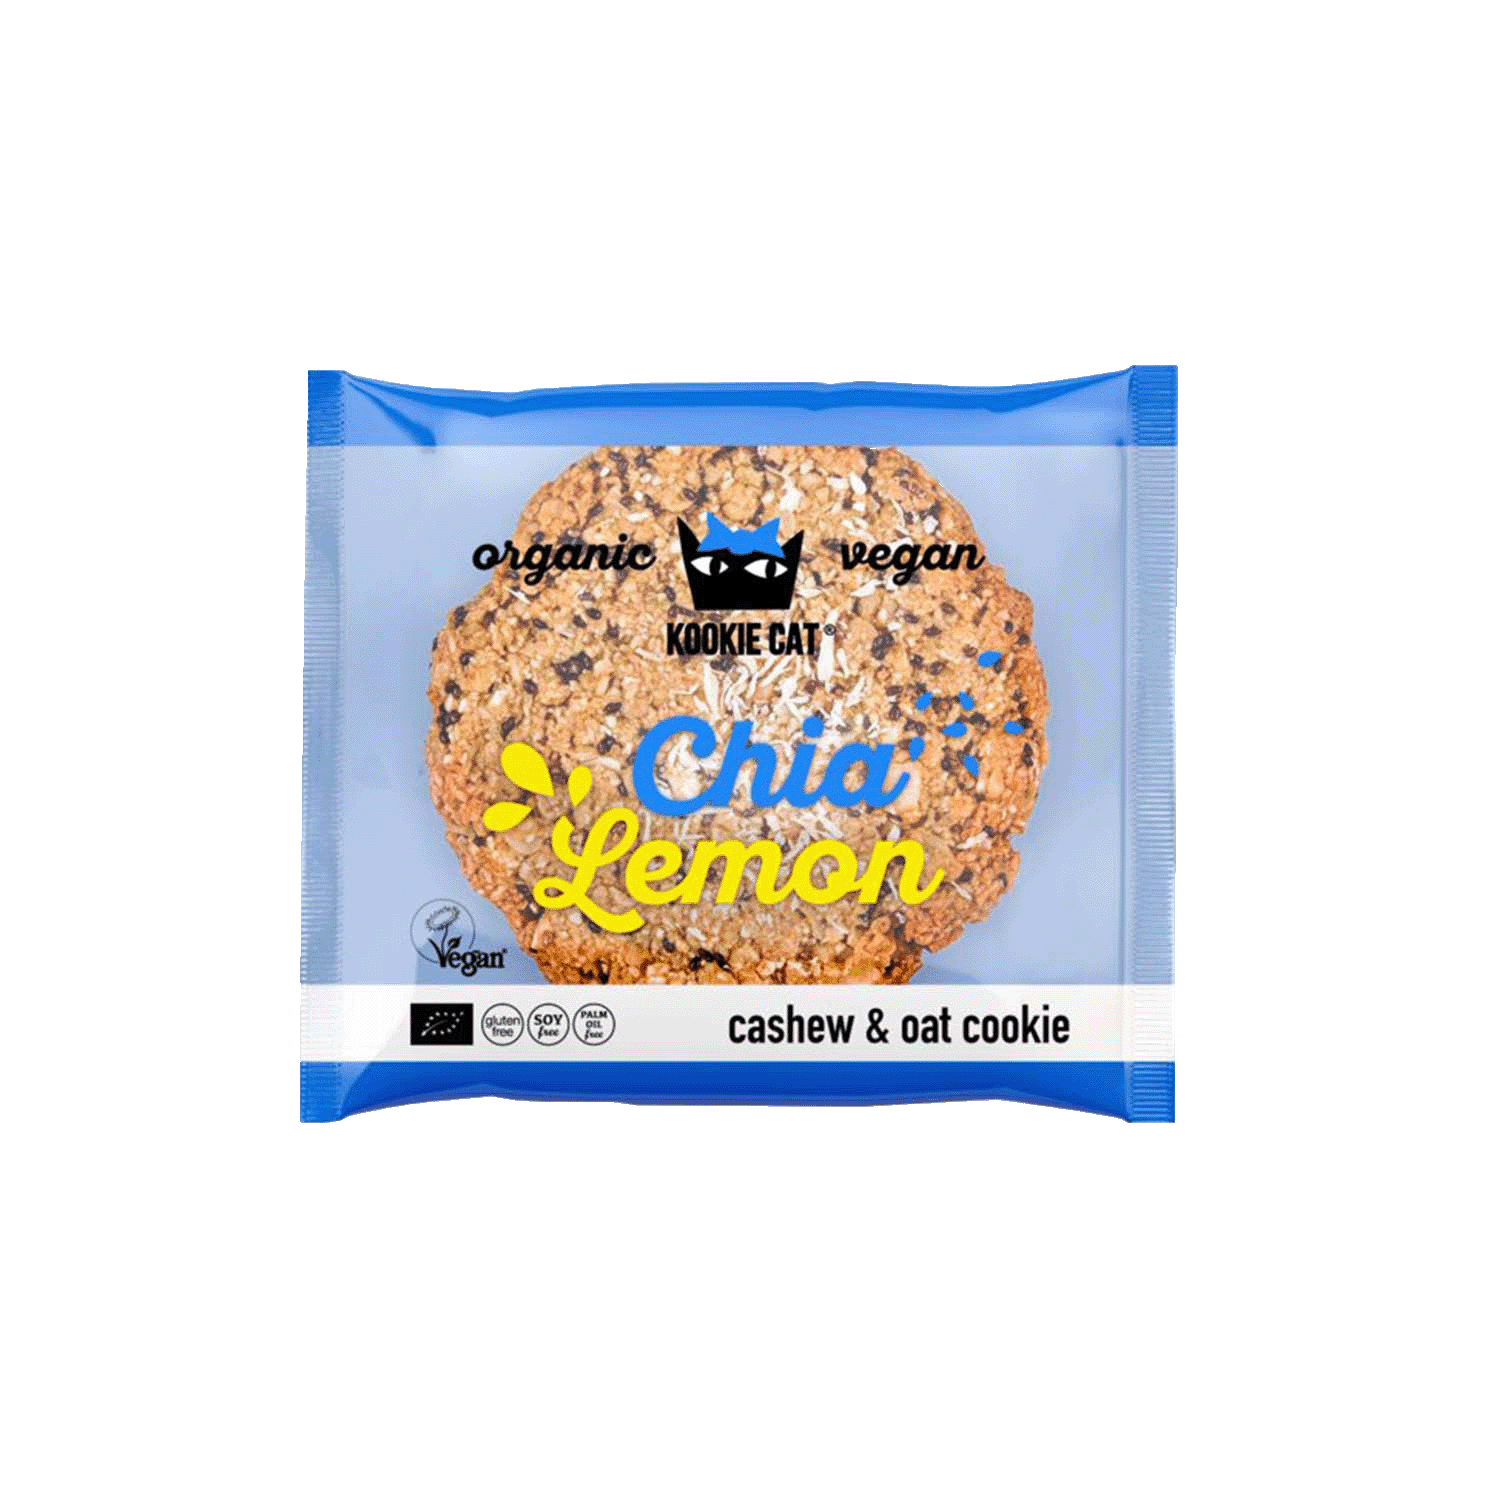 Cashew-Hafer-Keks Chia & Zitrone, BIO, 50g